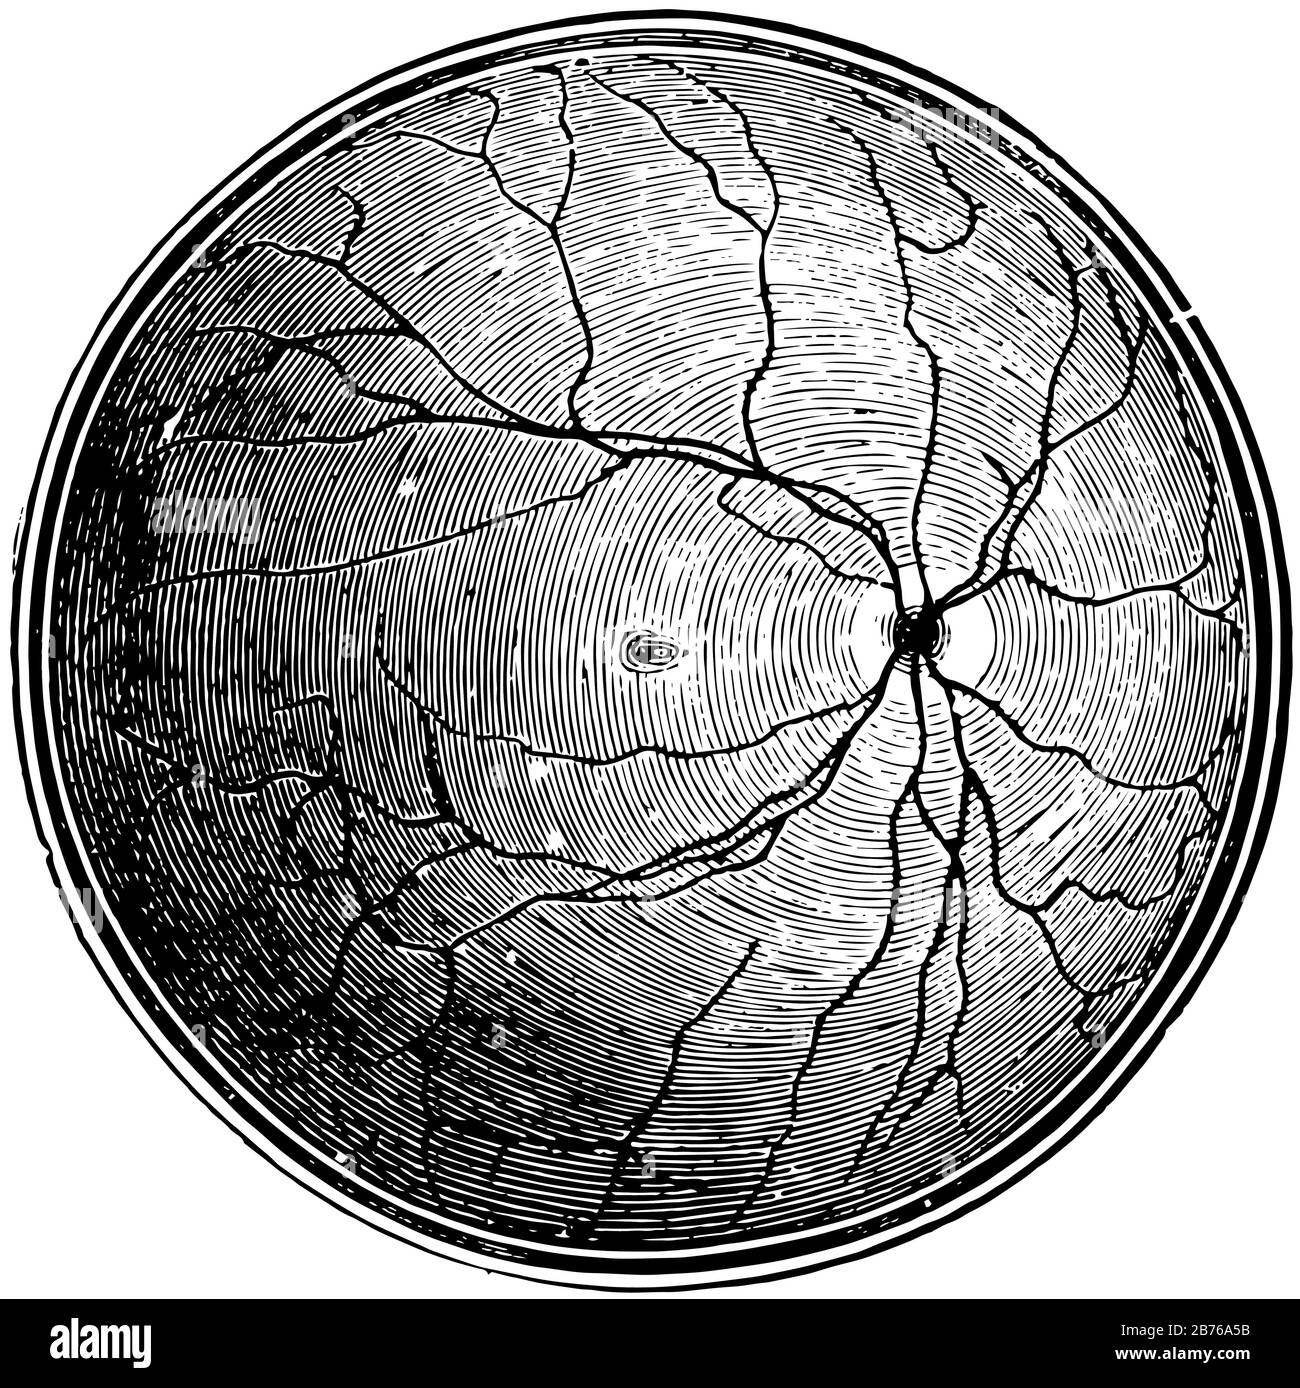 Questa illustrazione rappresenta Retina Blind Spot, disegno a linea vintage o illustrazione dell'incisione. Illustrazione Vettoriale